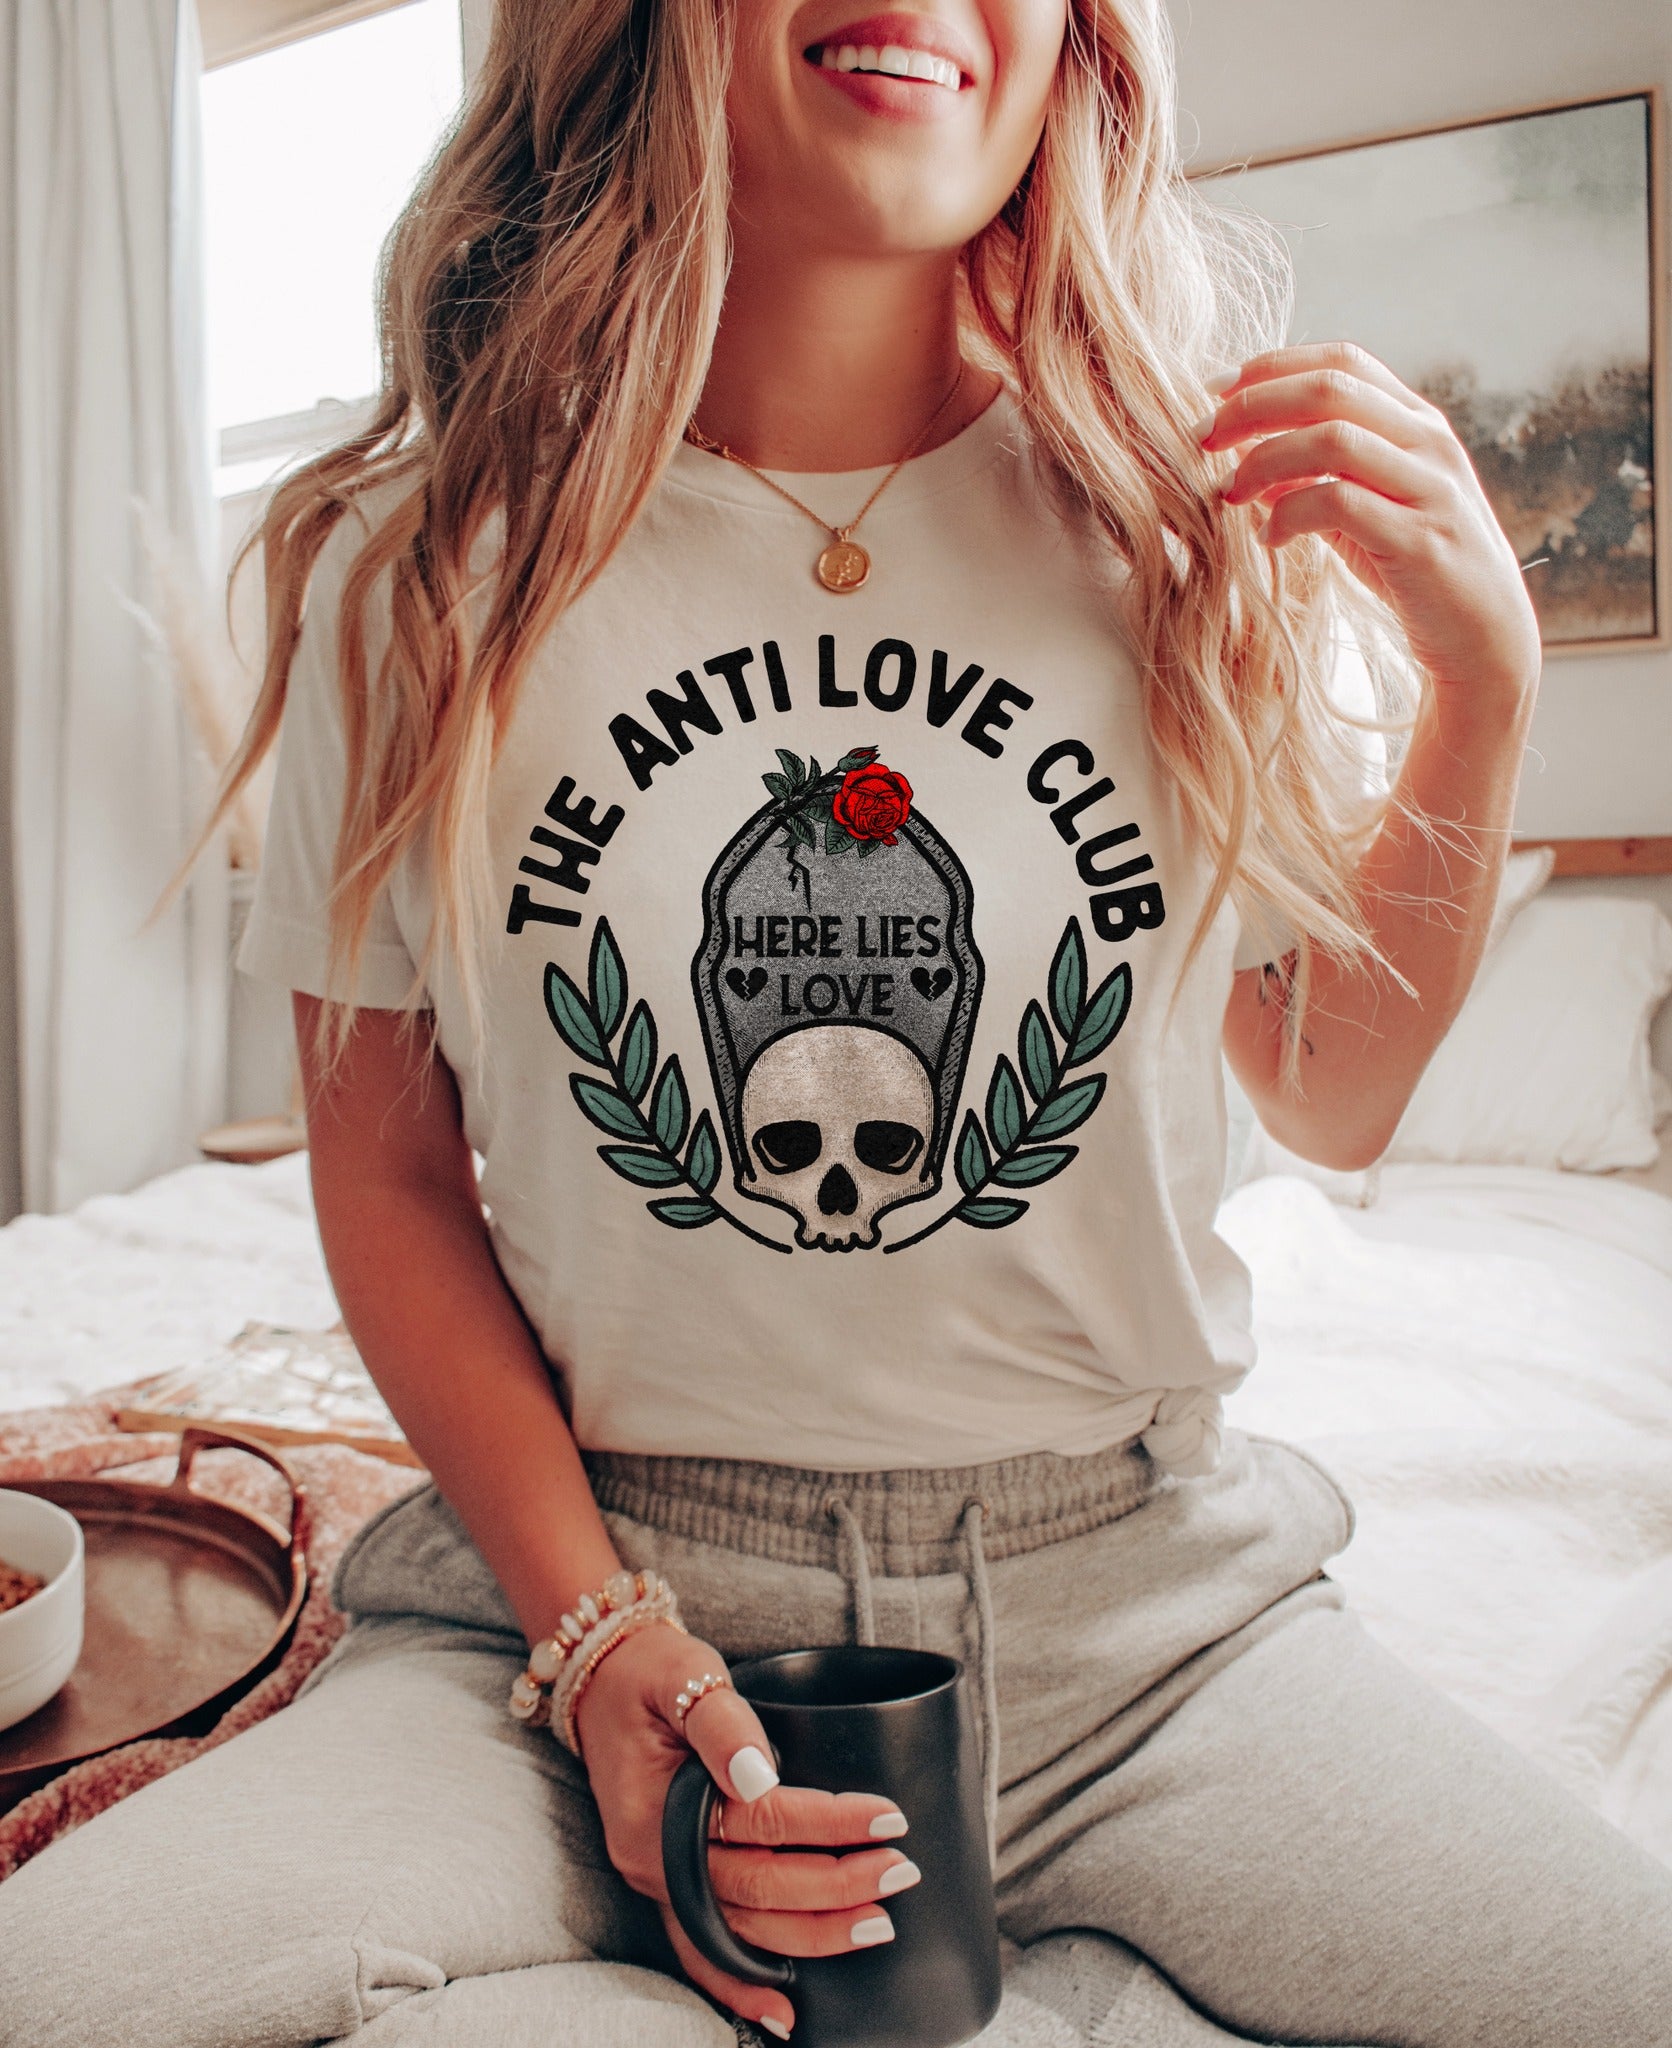 The Anti Love Club T-Shirt